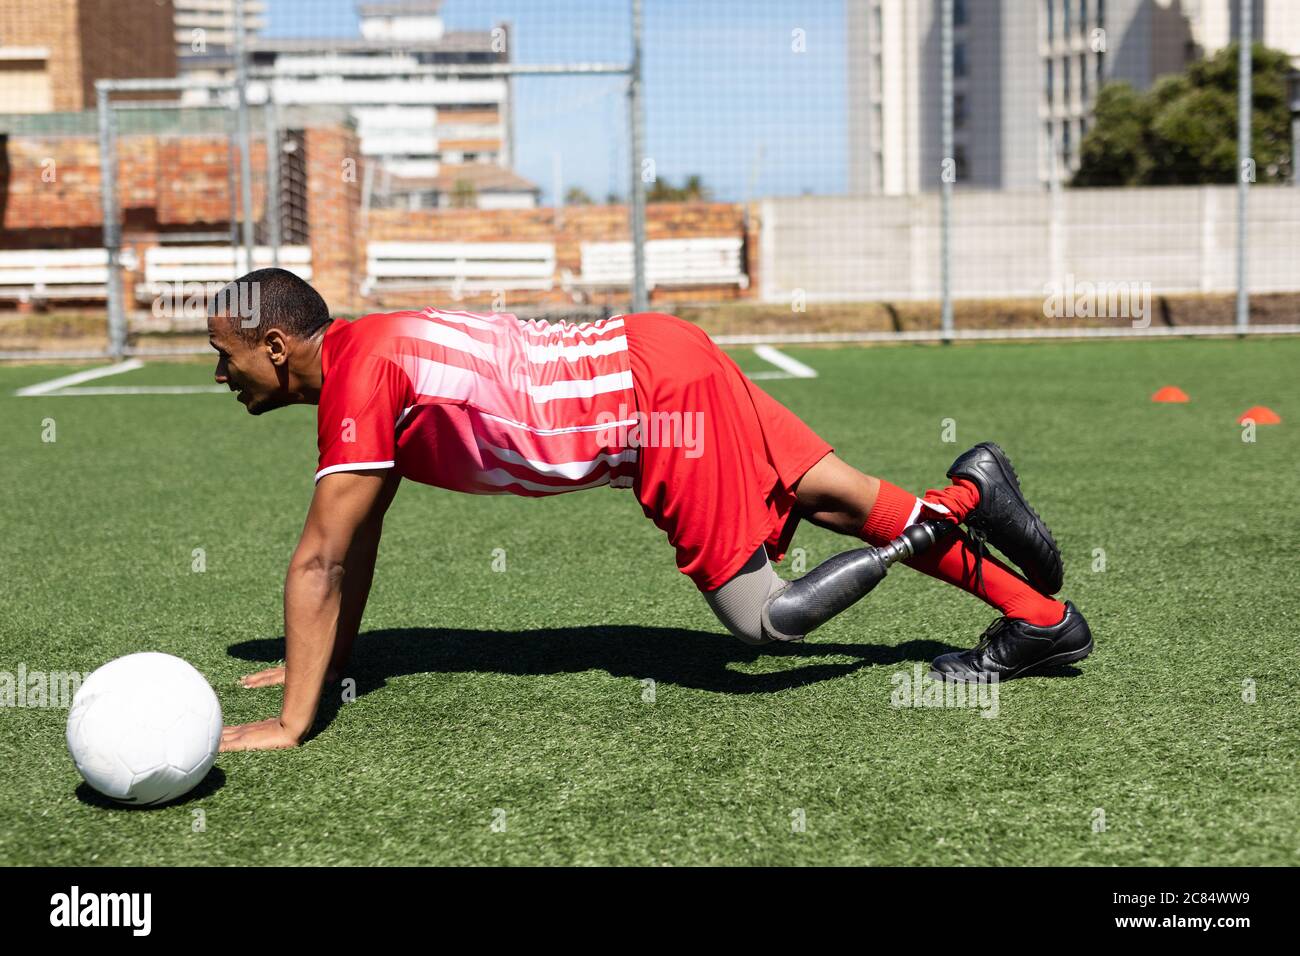 Gemischter Fußballspieler mit Beinprothese, der ein Mannschaftsstreifen trägt, der auf einem Sportplatz in der Sonne trainiert, und sich dabei aufwärmt, Liegestütze mit Ball ne zu machen Stockfoto